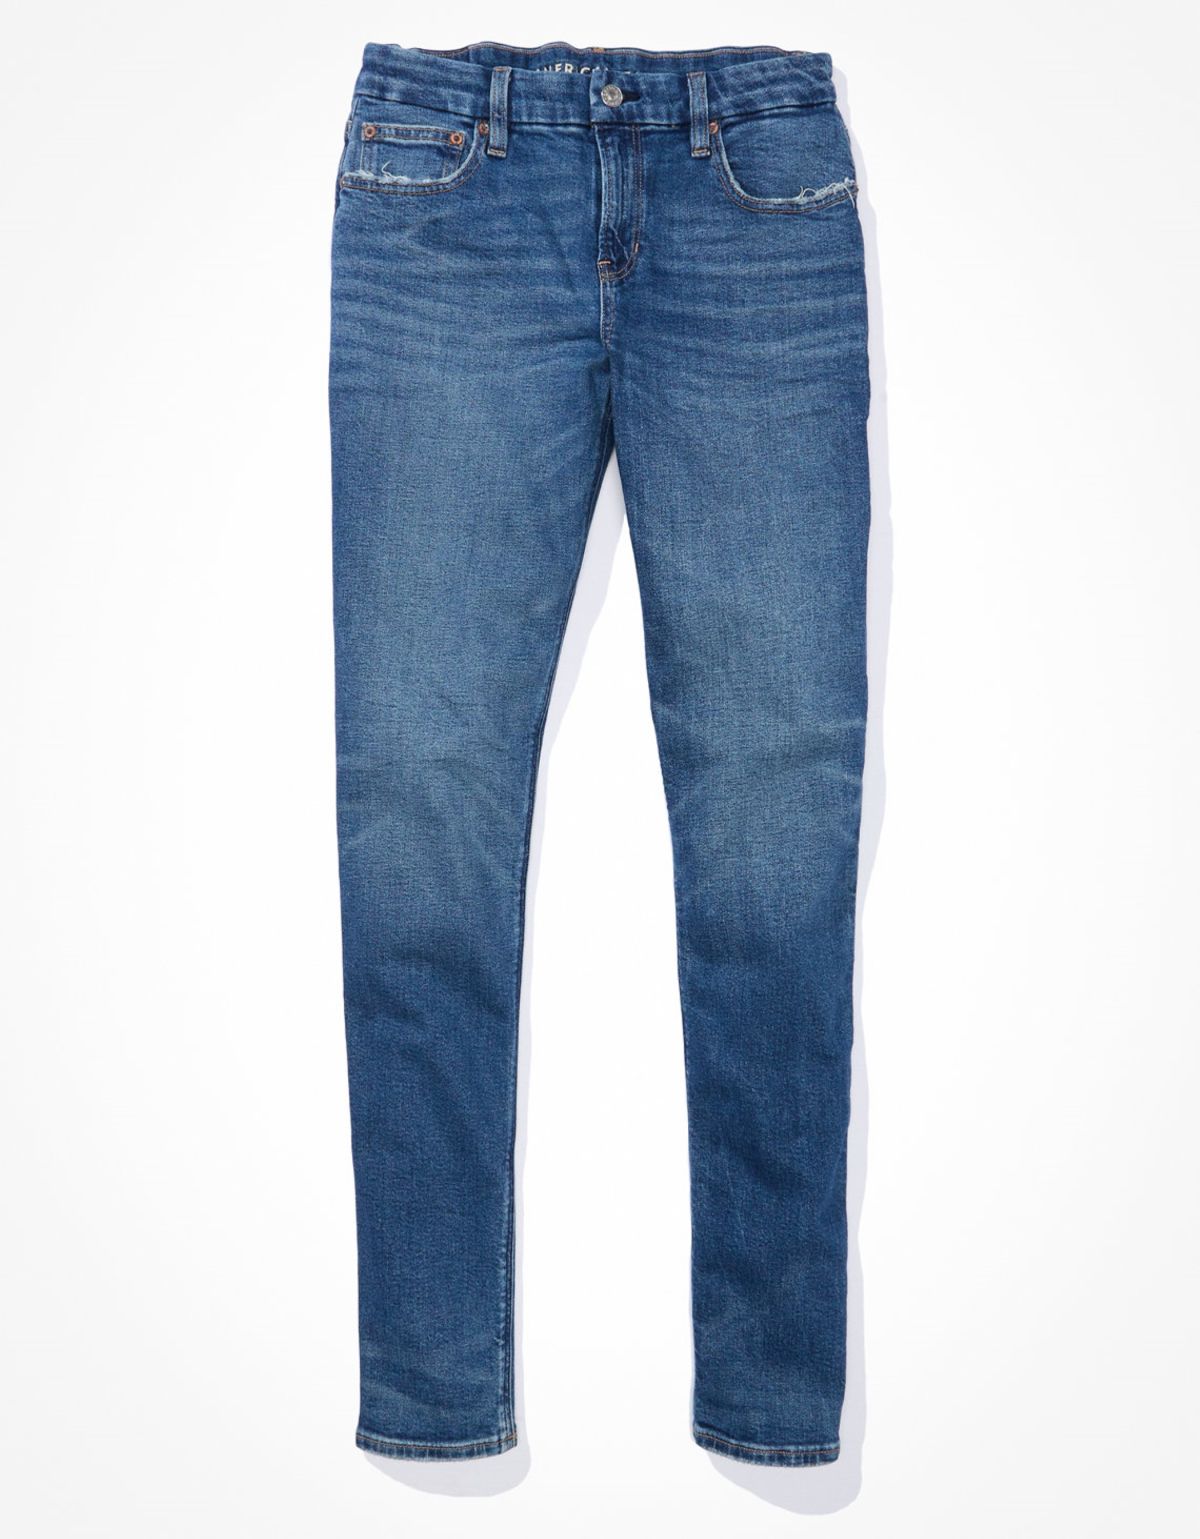  מכנסי ג'ינס בגזרת CURVY 90S SKINNY / נשים של AMERICAN EAGLE